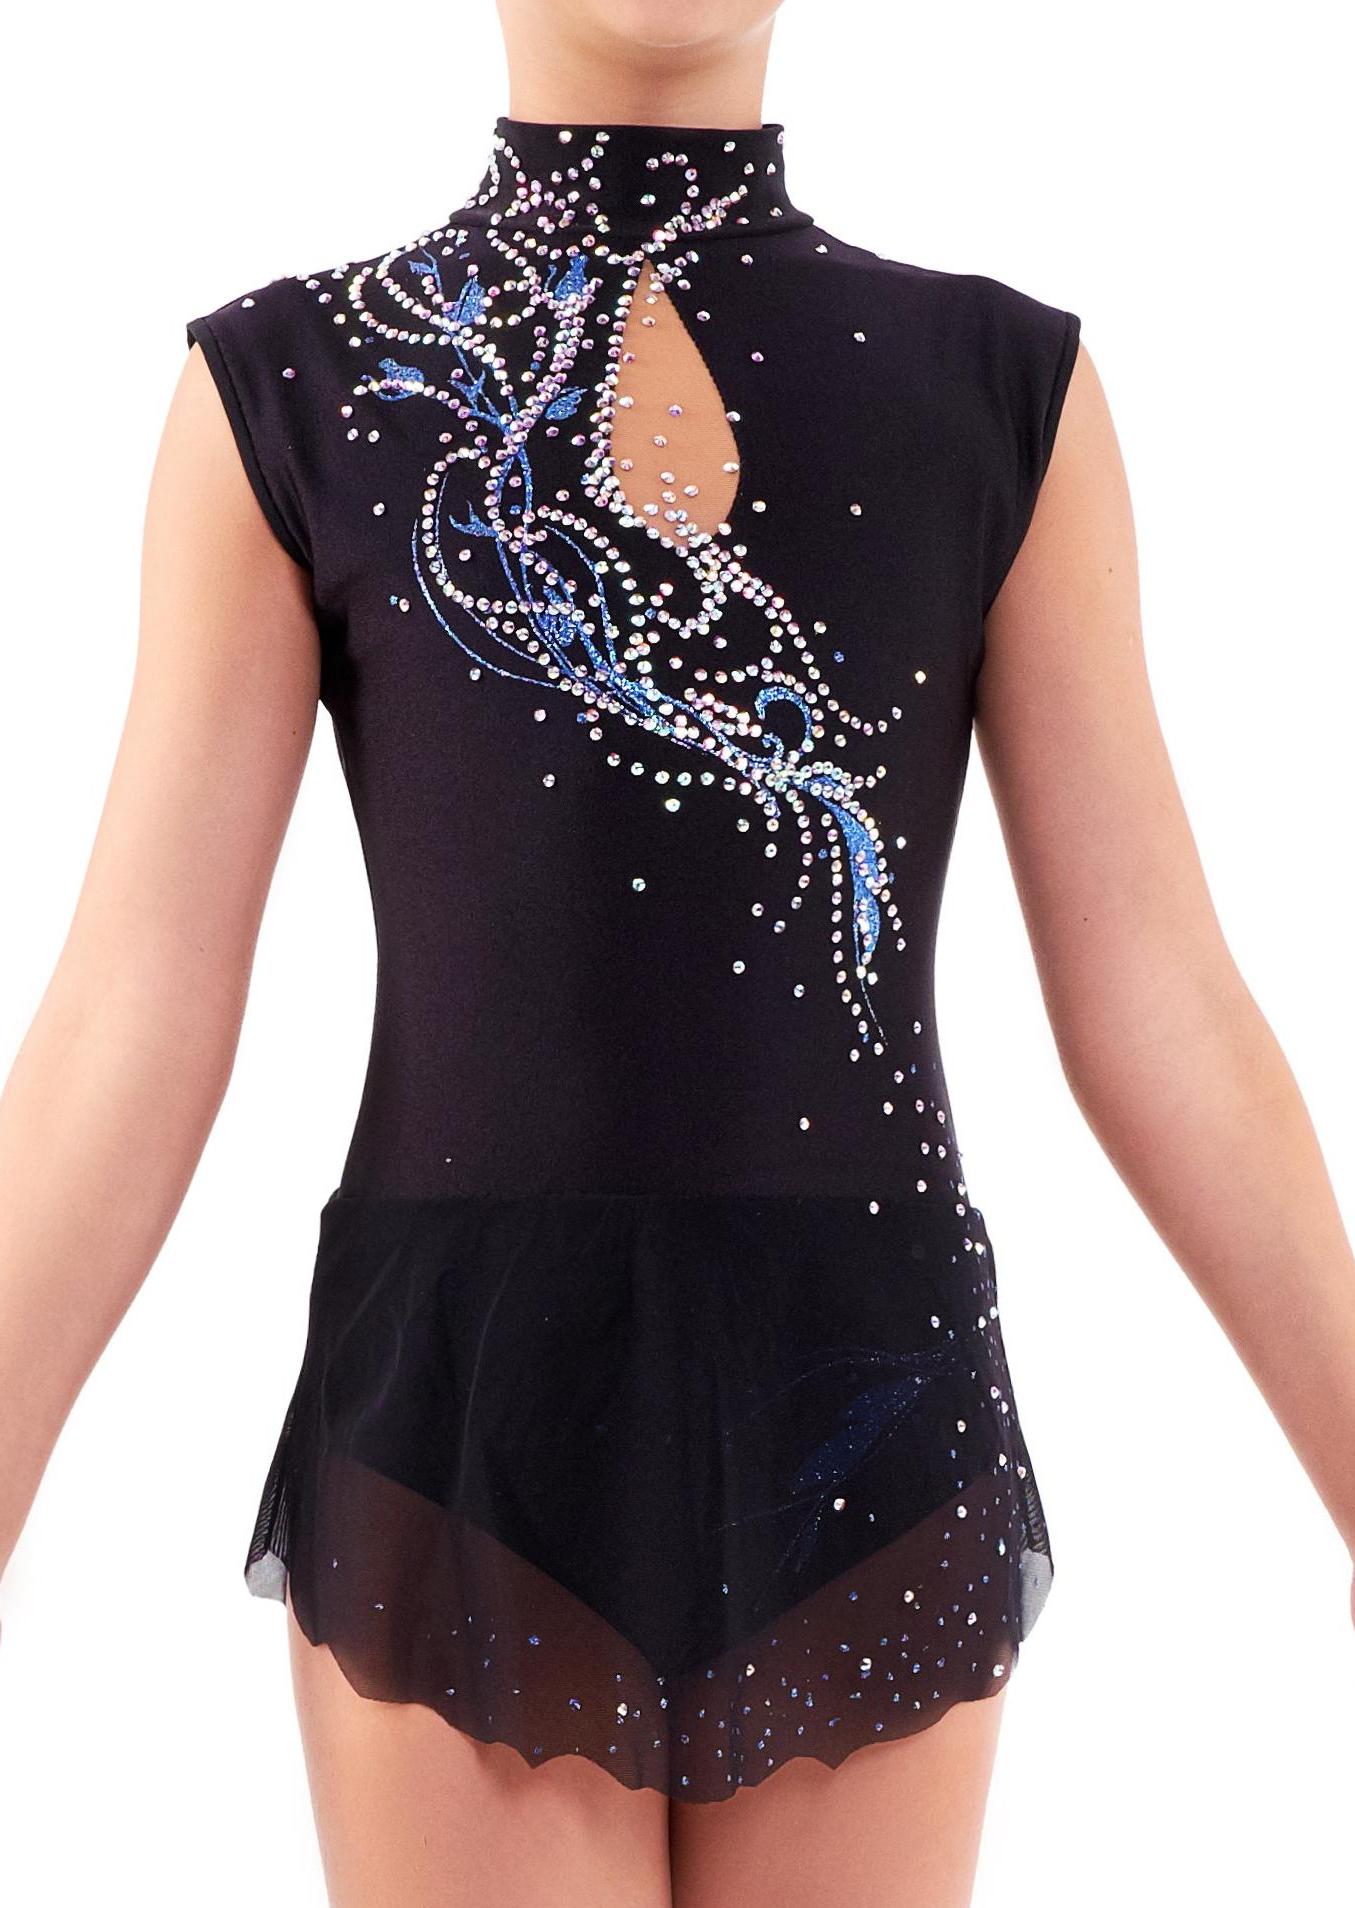 Купальник для художественной гимнастики Милори — купить в интернет-магазине  «Танцующие»